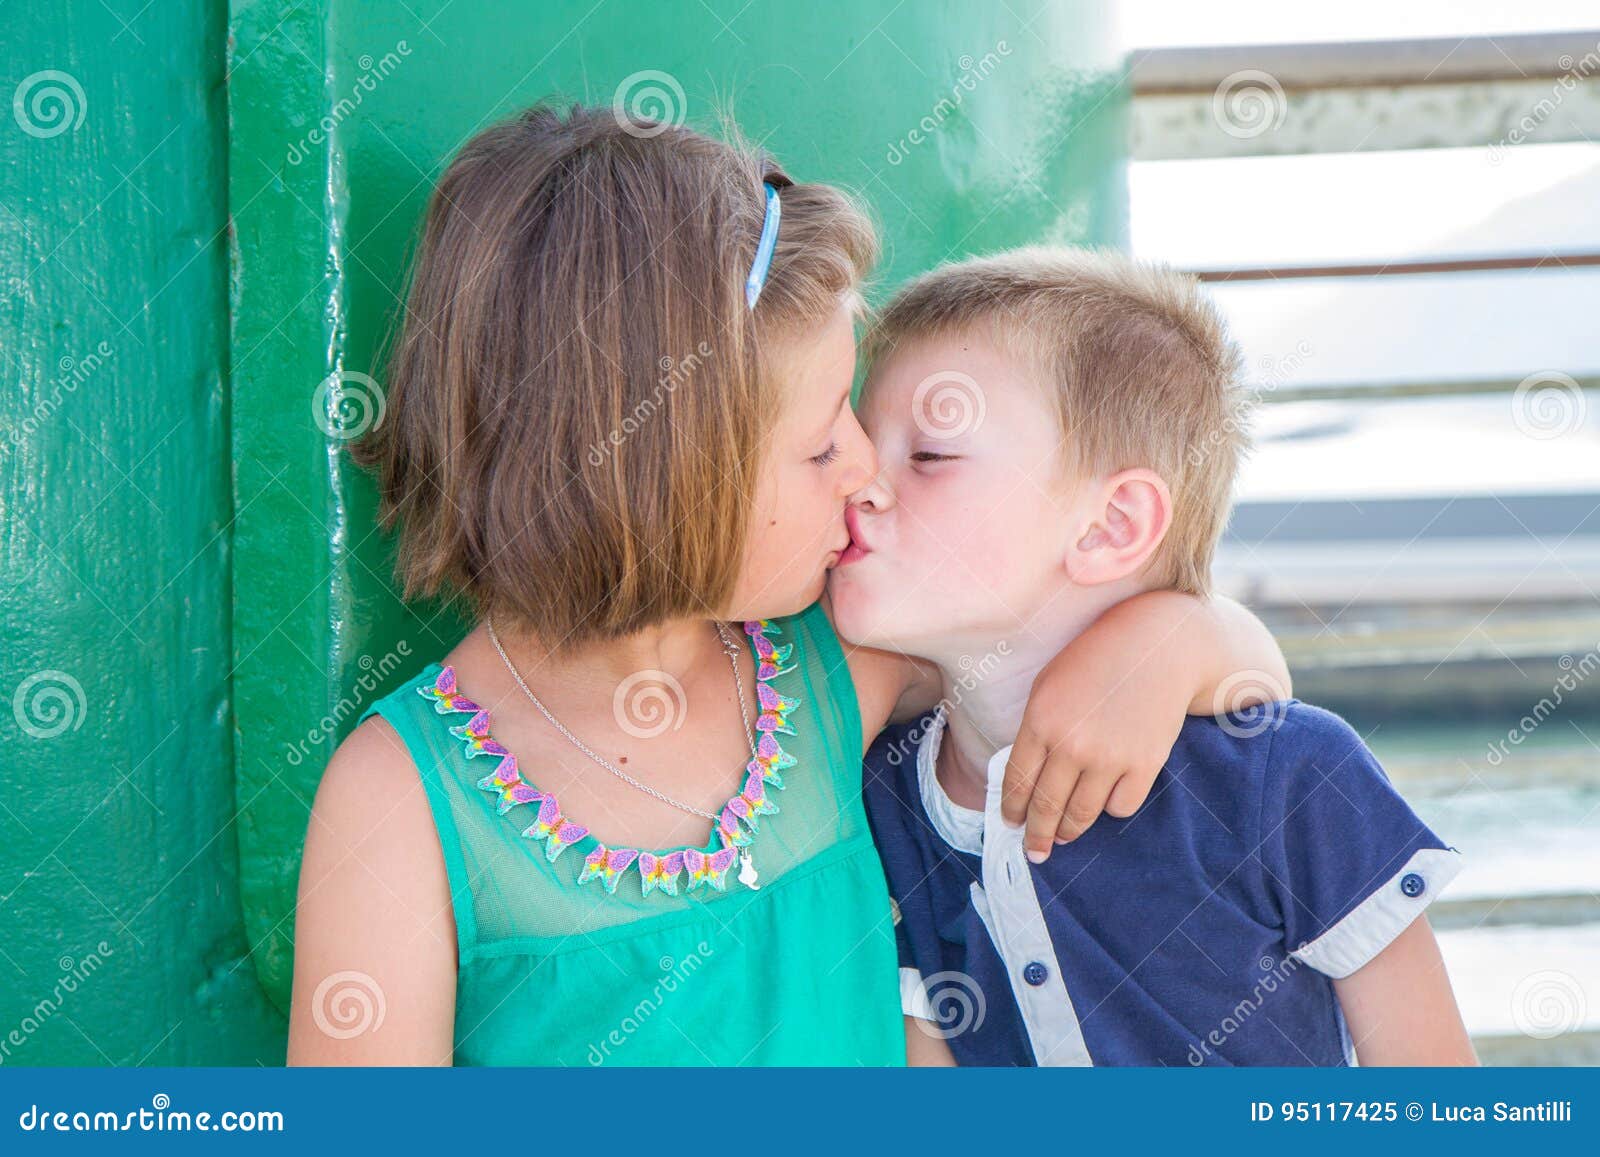 Полизал маме рассказ. Поцелуй братаси сестры. Поцелуй братьев. Детский поцелуй в губы брата и сестры. Поцелуй девочек сестричек.